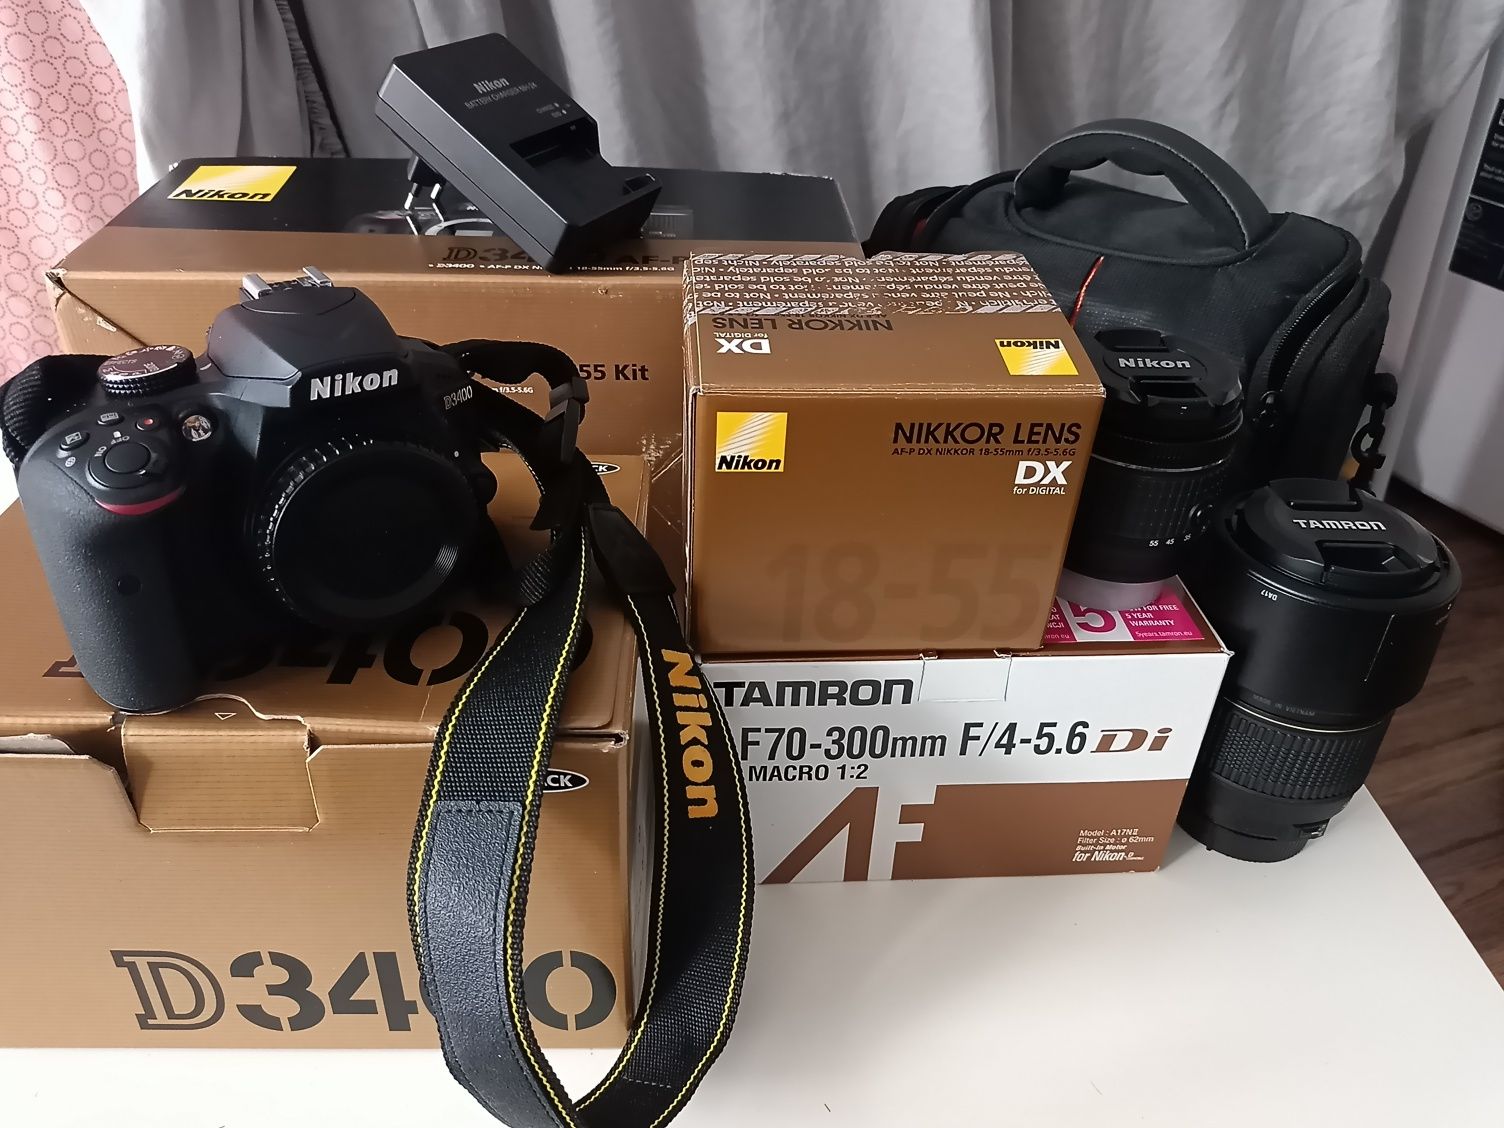 Nikon D3400 AF-P 18-55 Kit